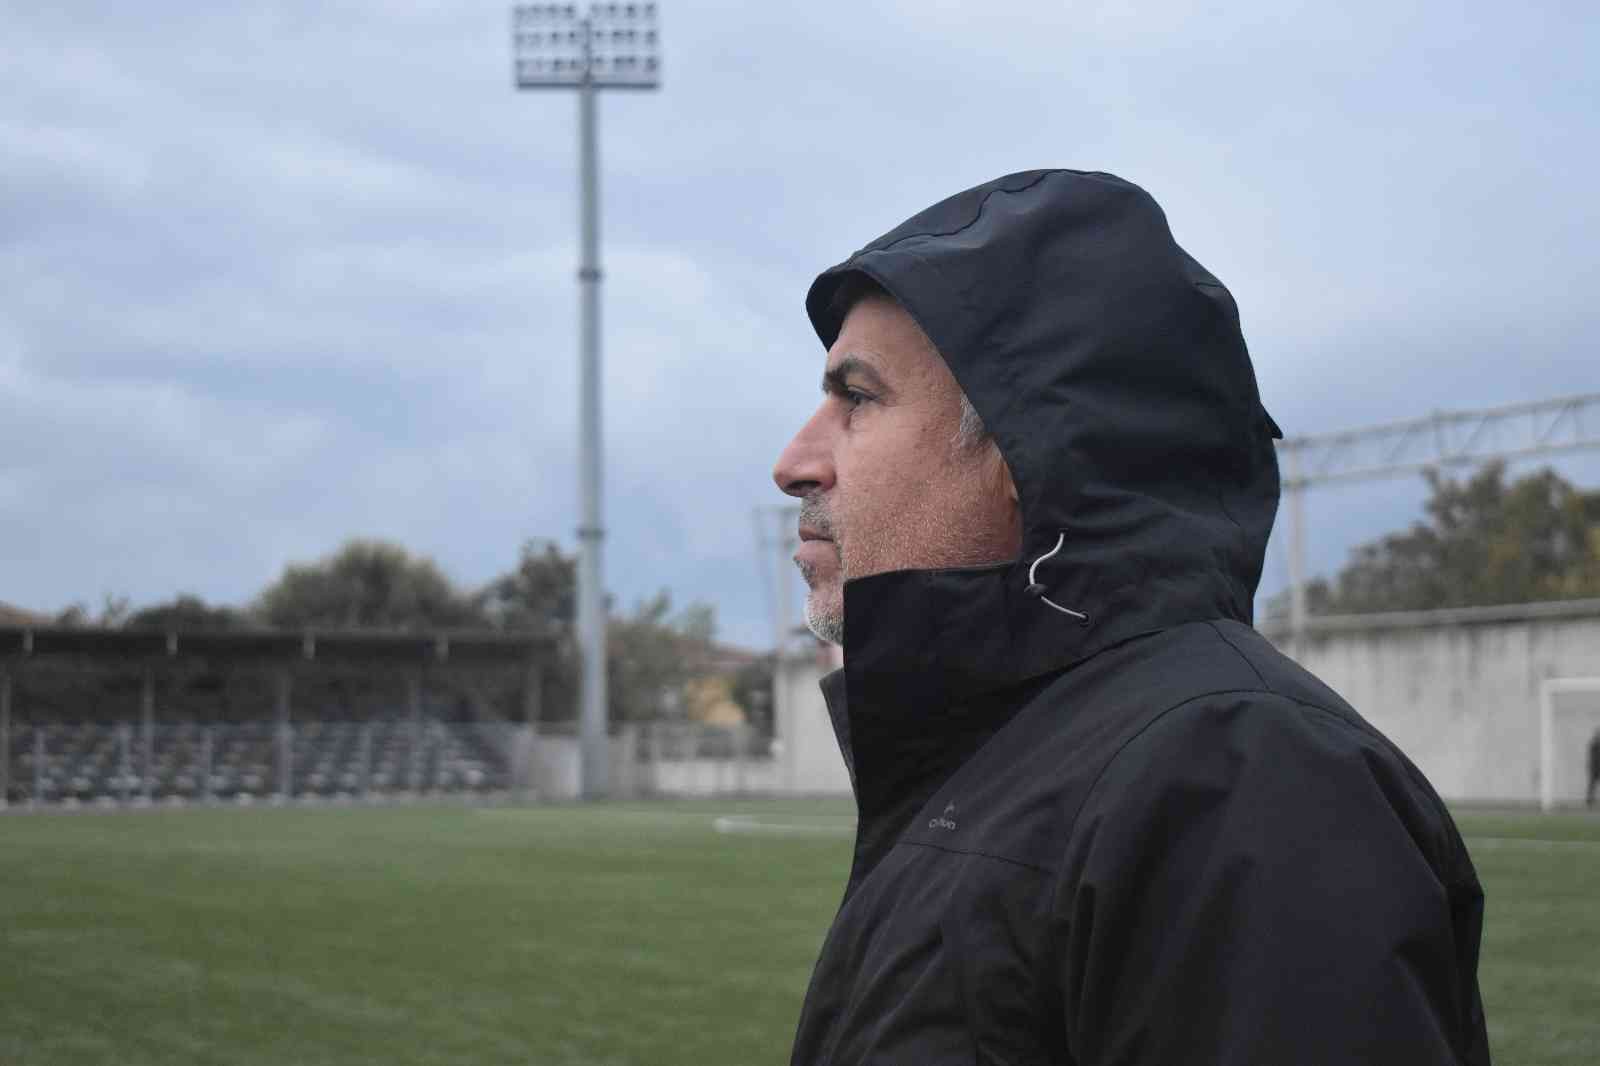 Belediye başkan yardımcısı kulüp başkanı olunca ilk maçta ilçesinin takımını yendi #kocaeli